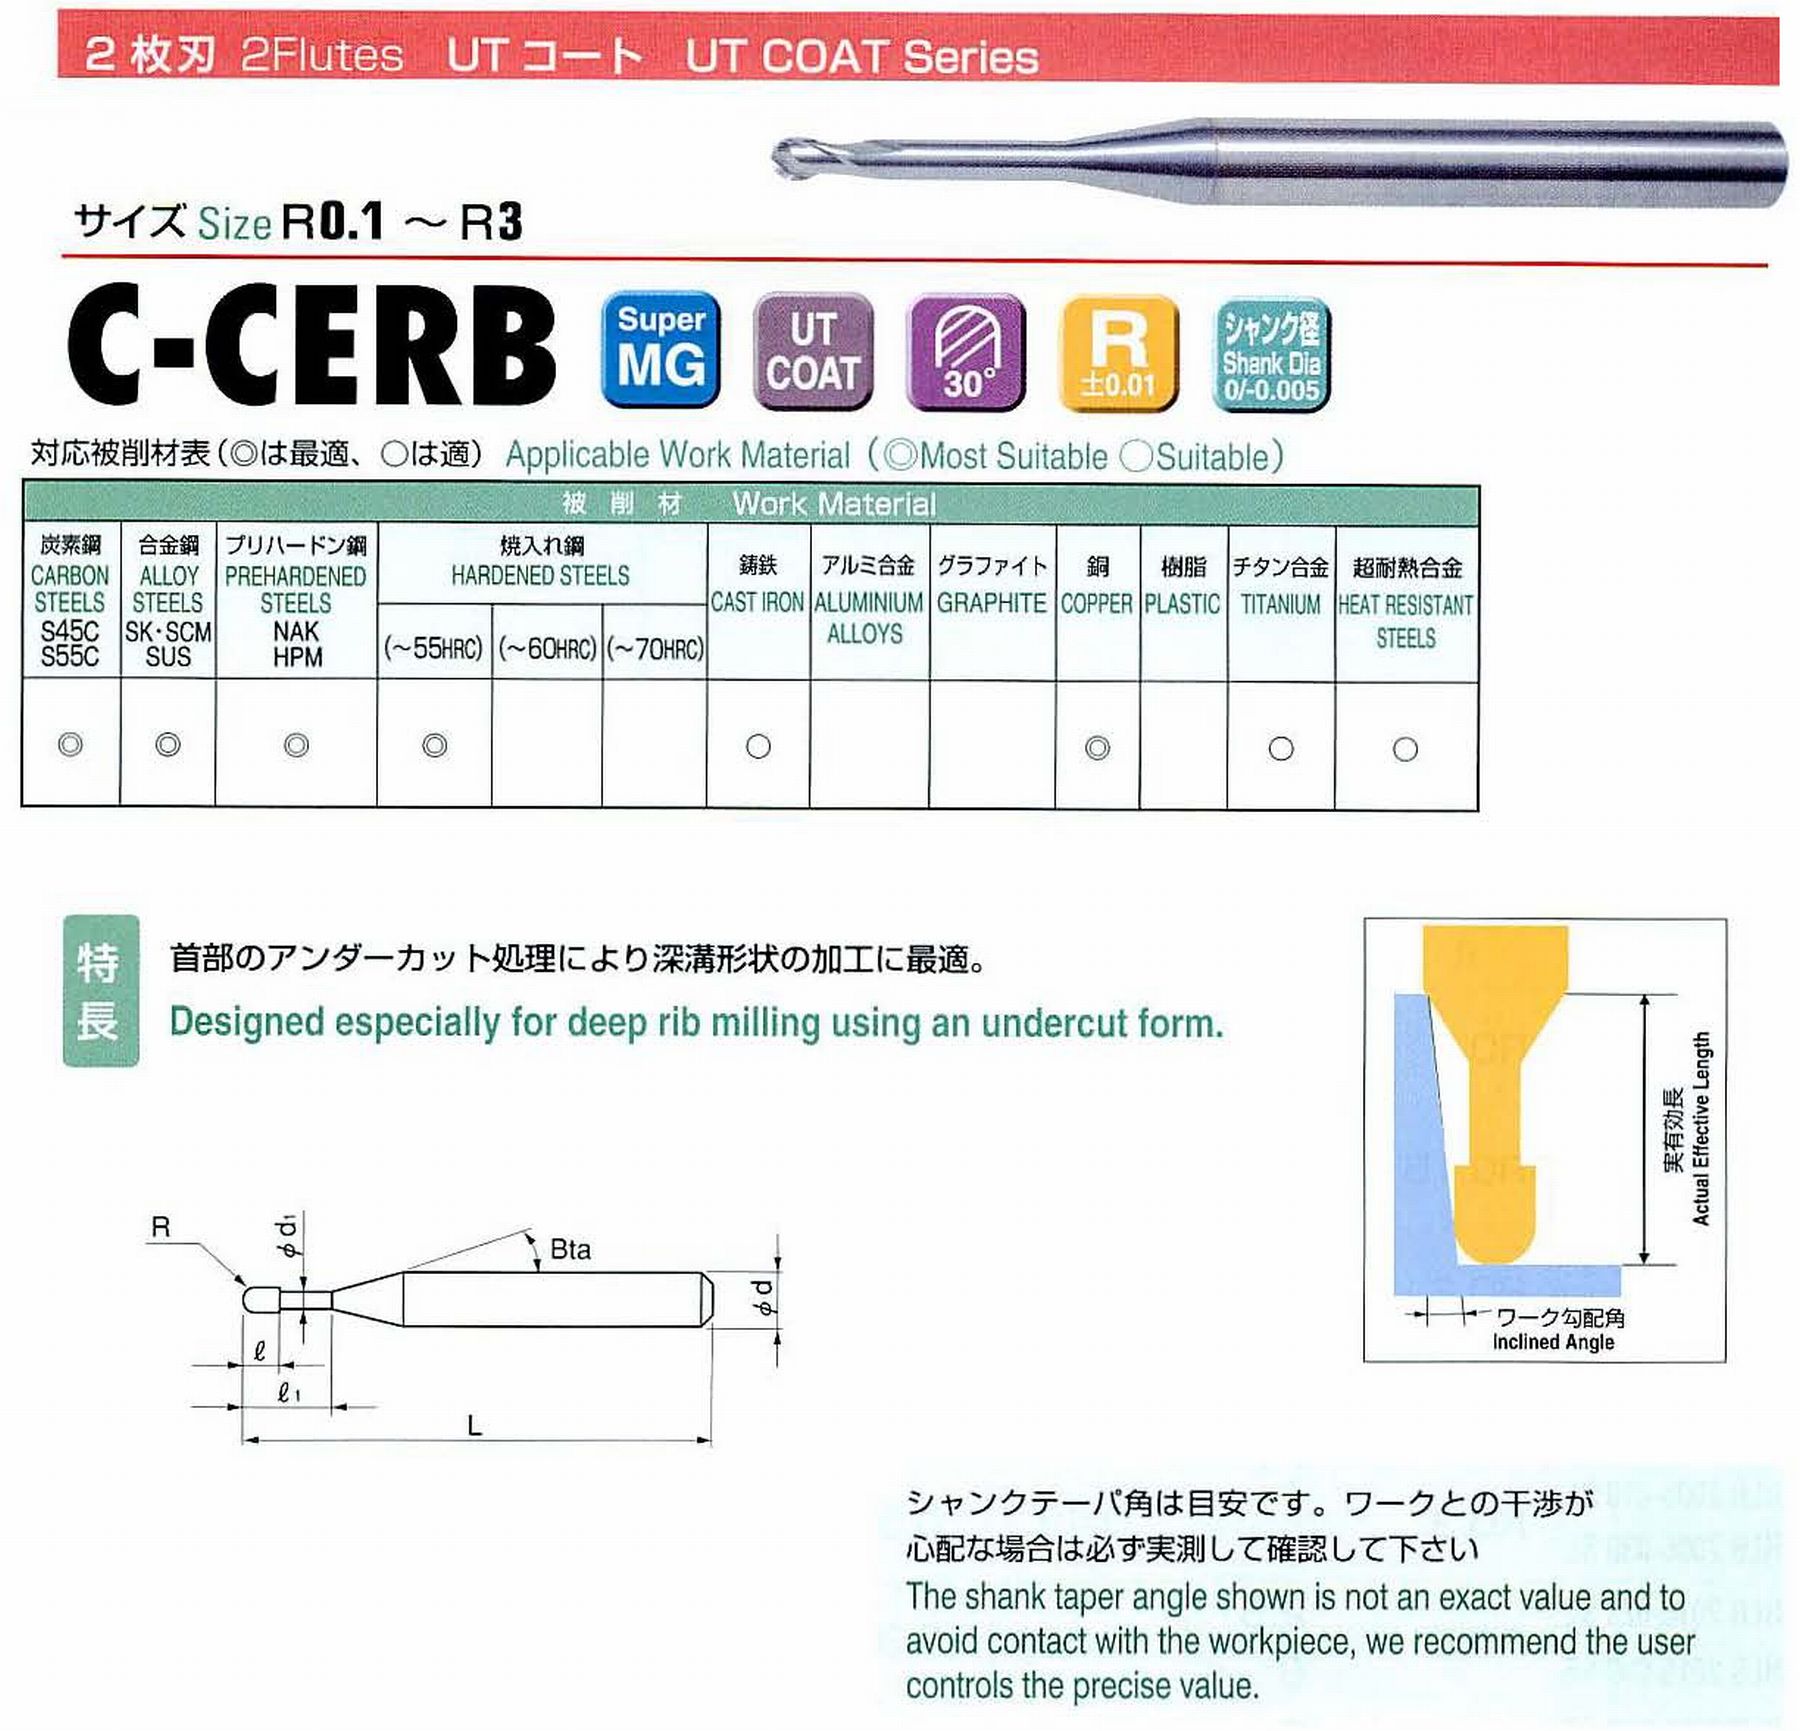 ユニオンツール 2枚刃 C-CERB2005-2 ボール半径R0.25 有効長2 刃長0.4 首径0.47 シャンクテーパ角16° 全長45 シャンク径4